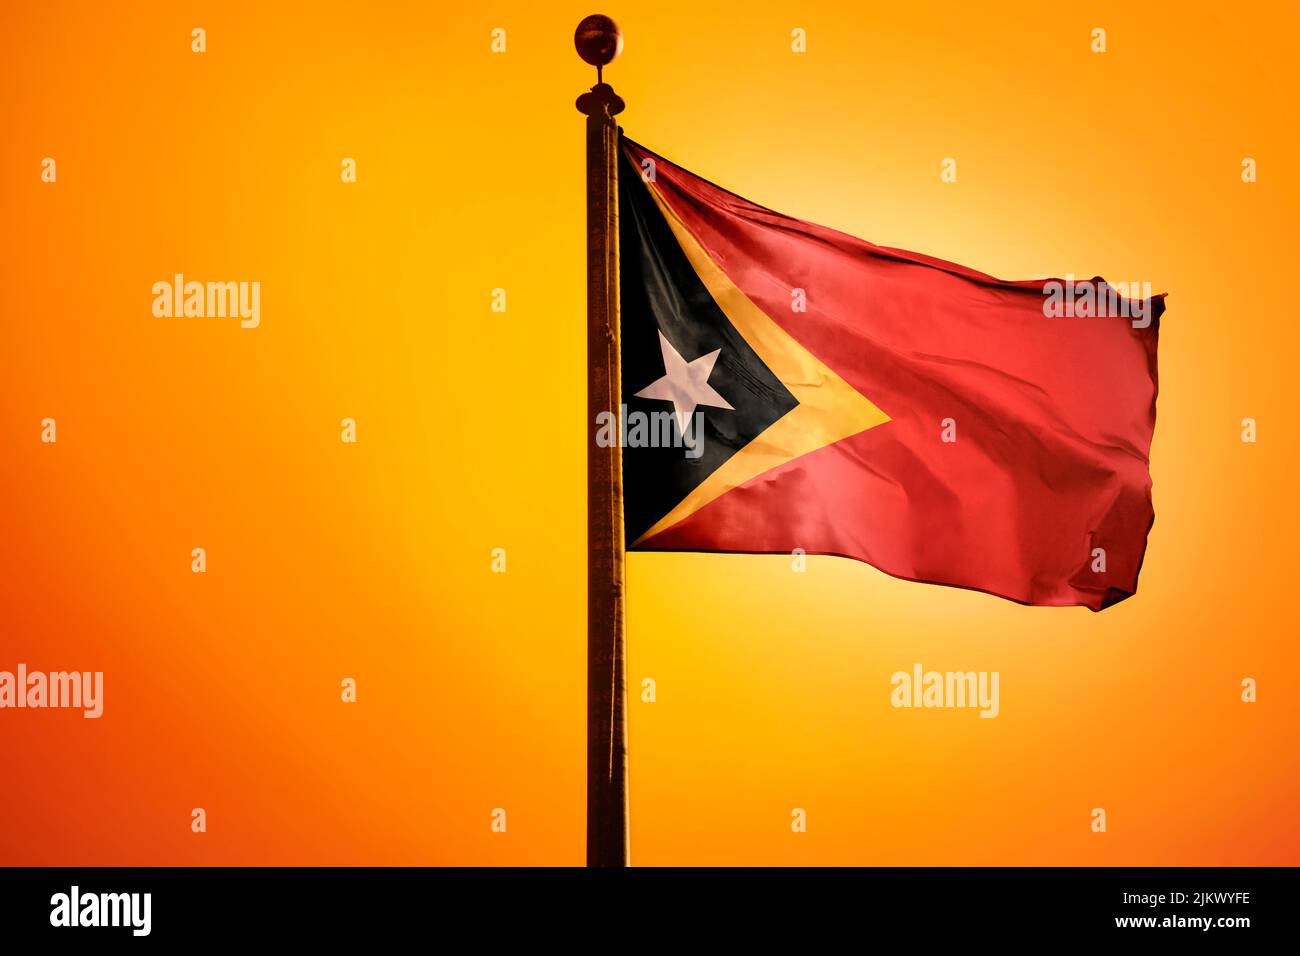 Eine Darstellung der Timor-Leste-Flagge aus dem Jahr 3D, die im Wind winkt, mit orangefarbenem Hintergrund Stockfoto